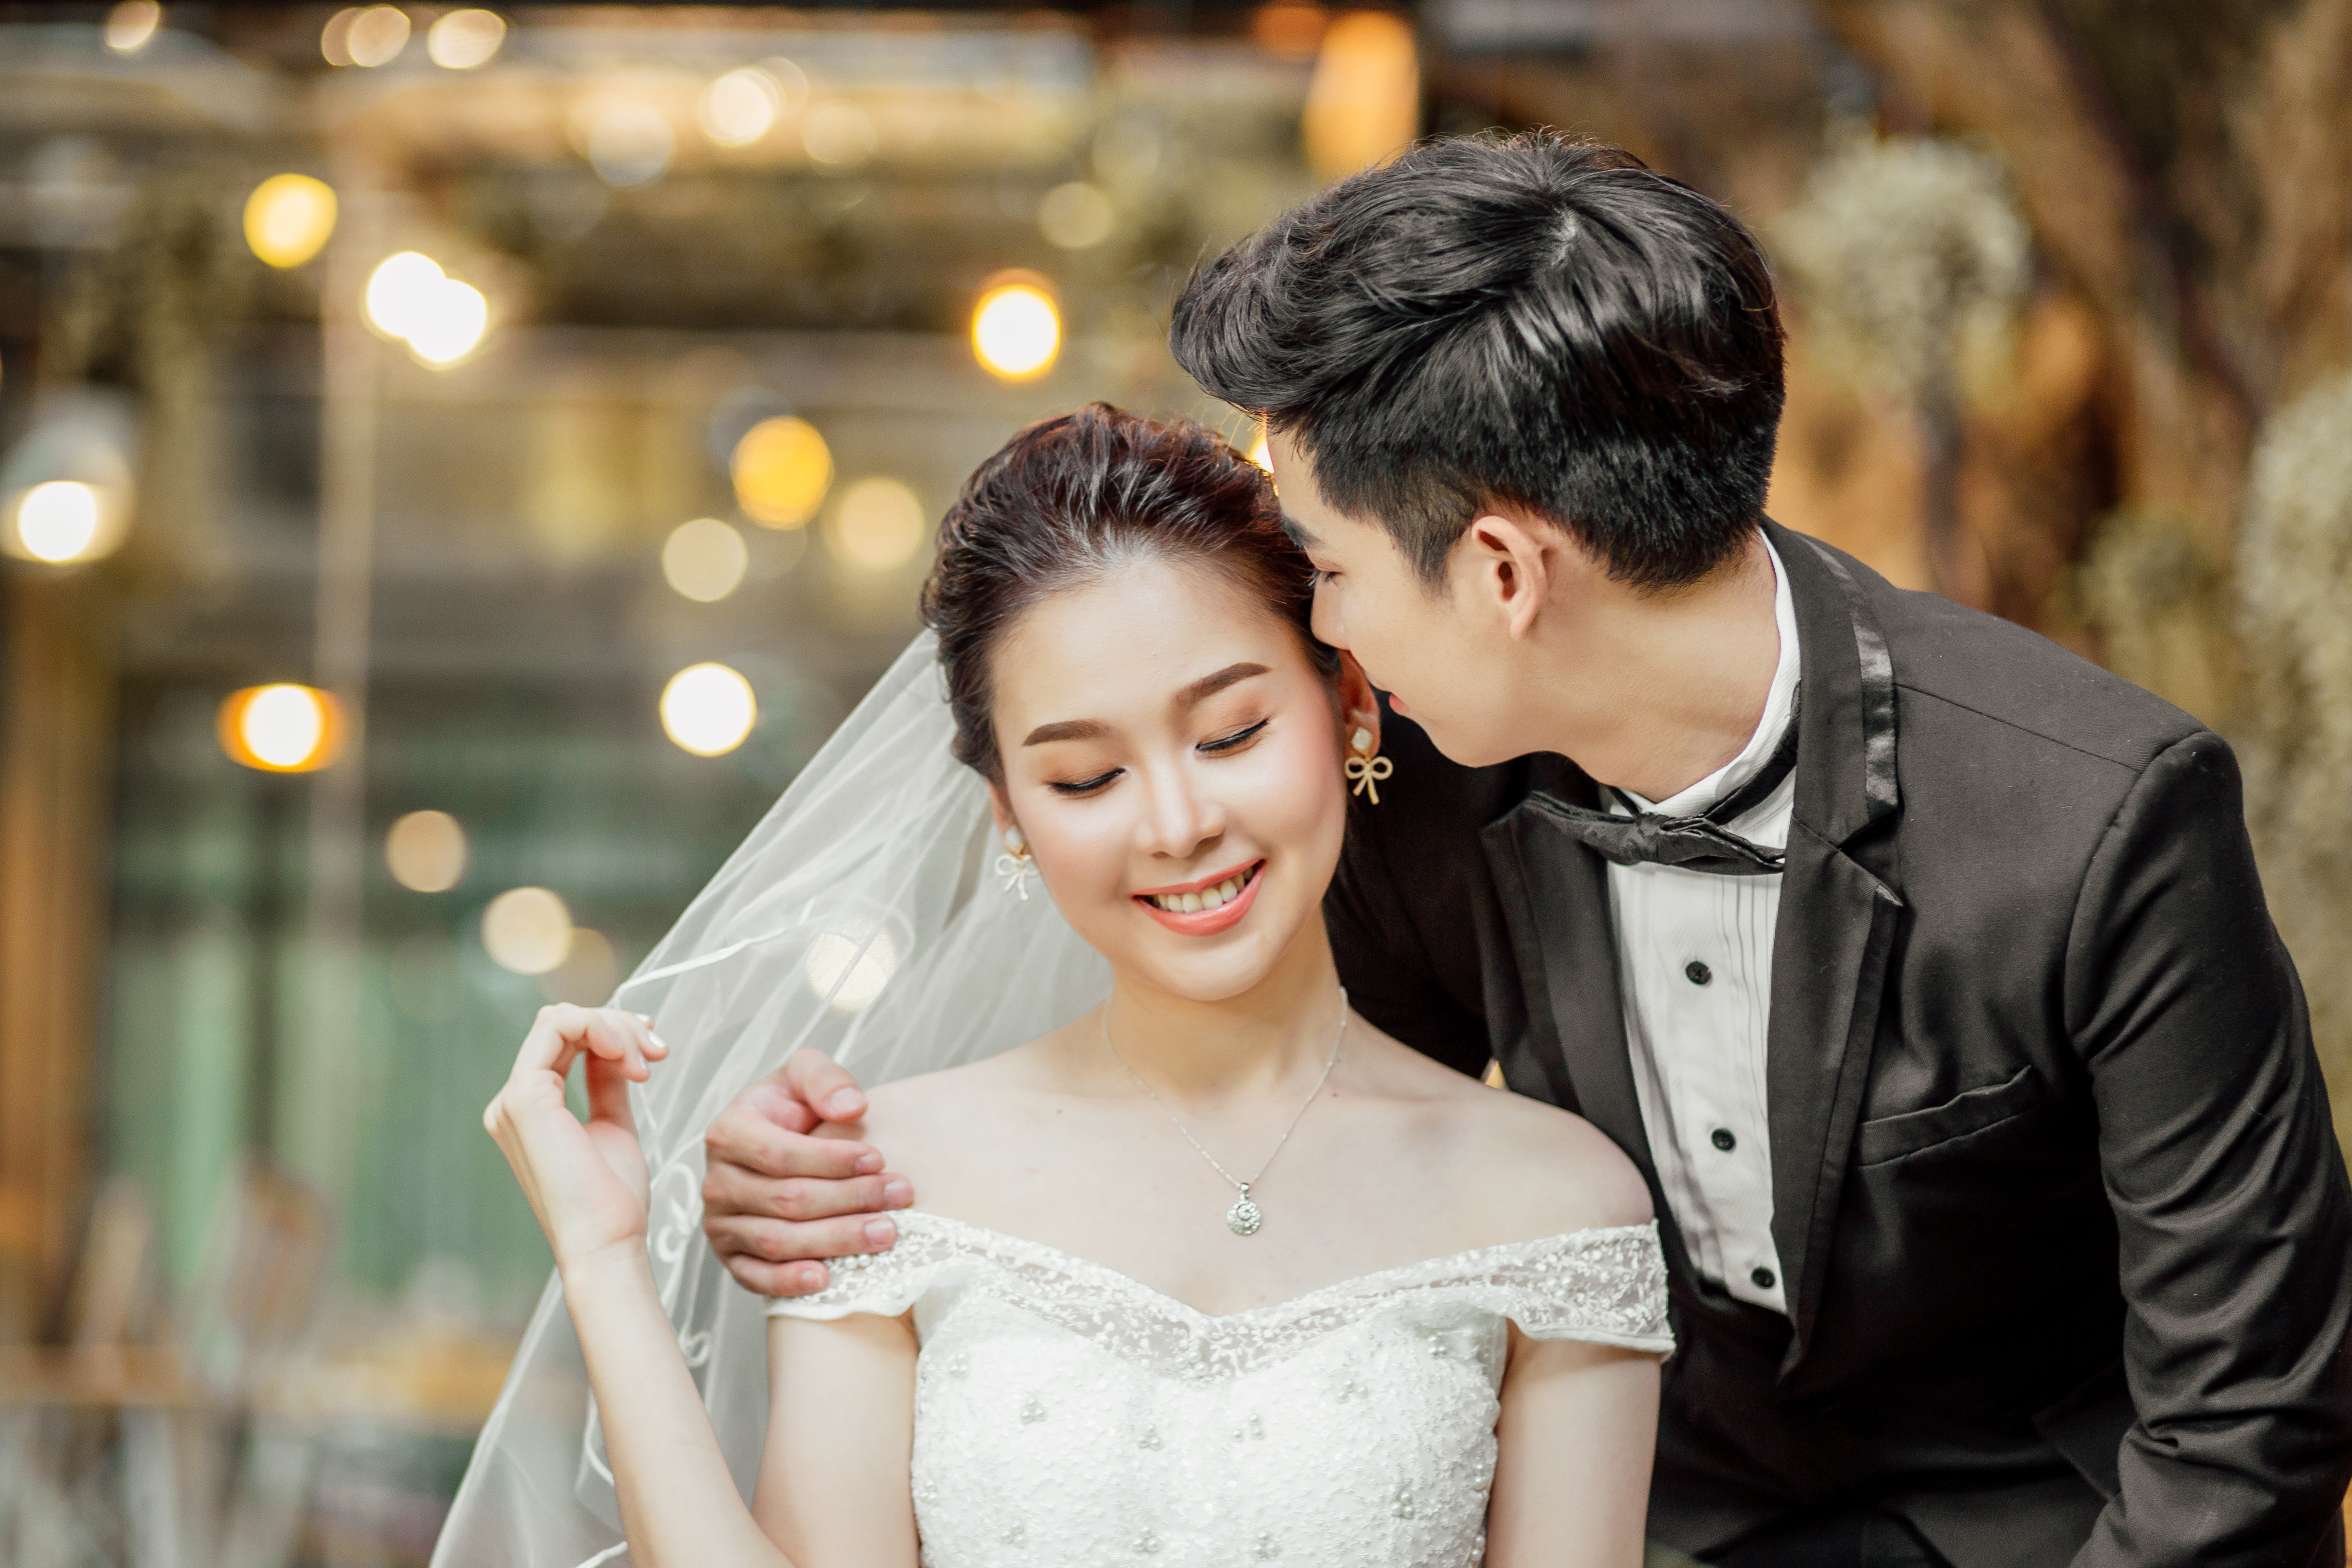 Uk Ürümqi in dating asian Asian Dating